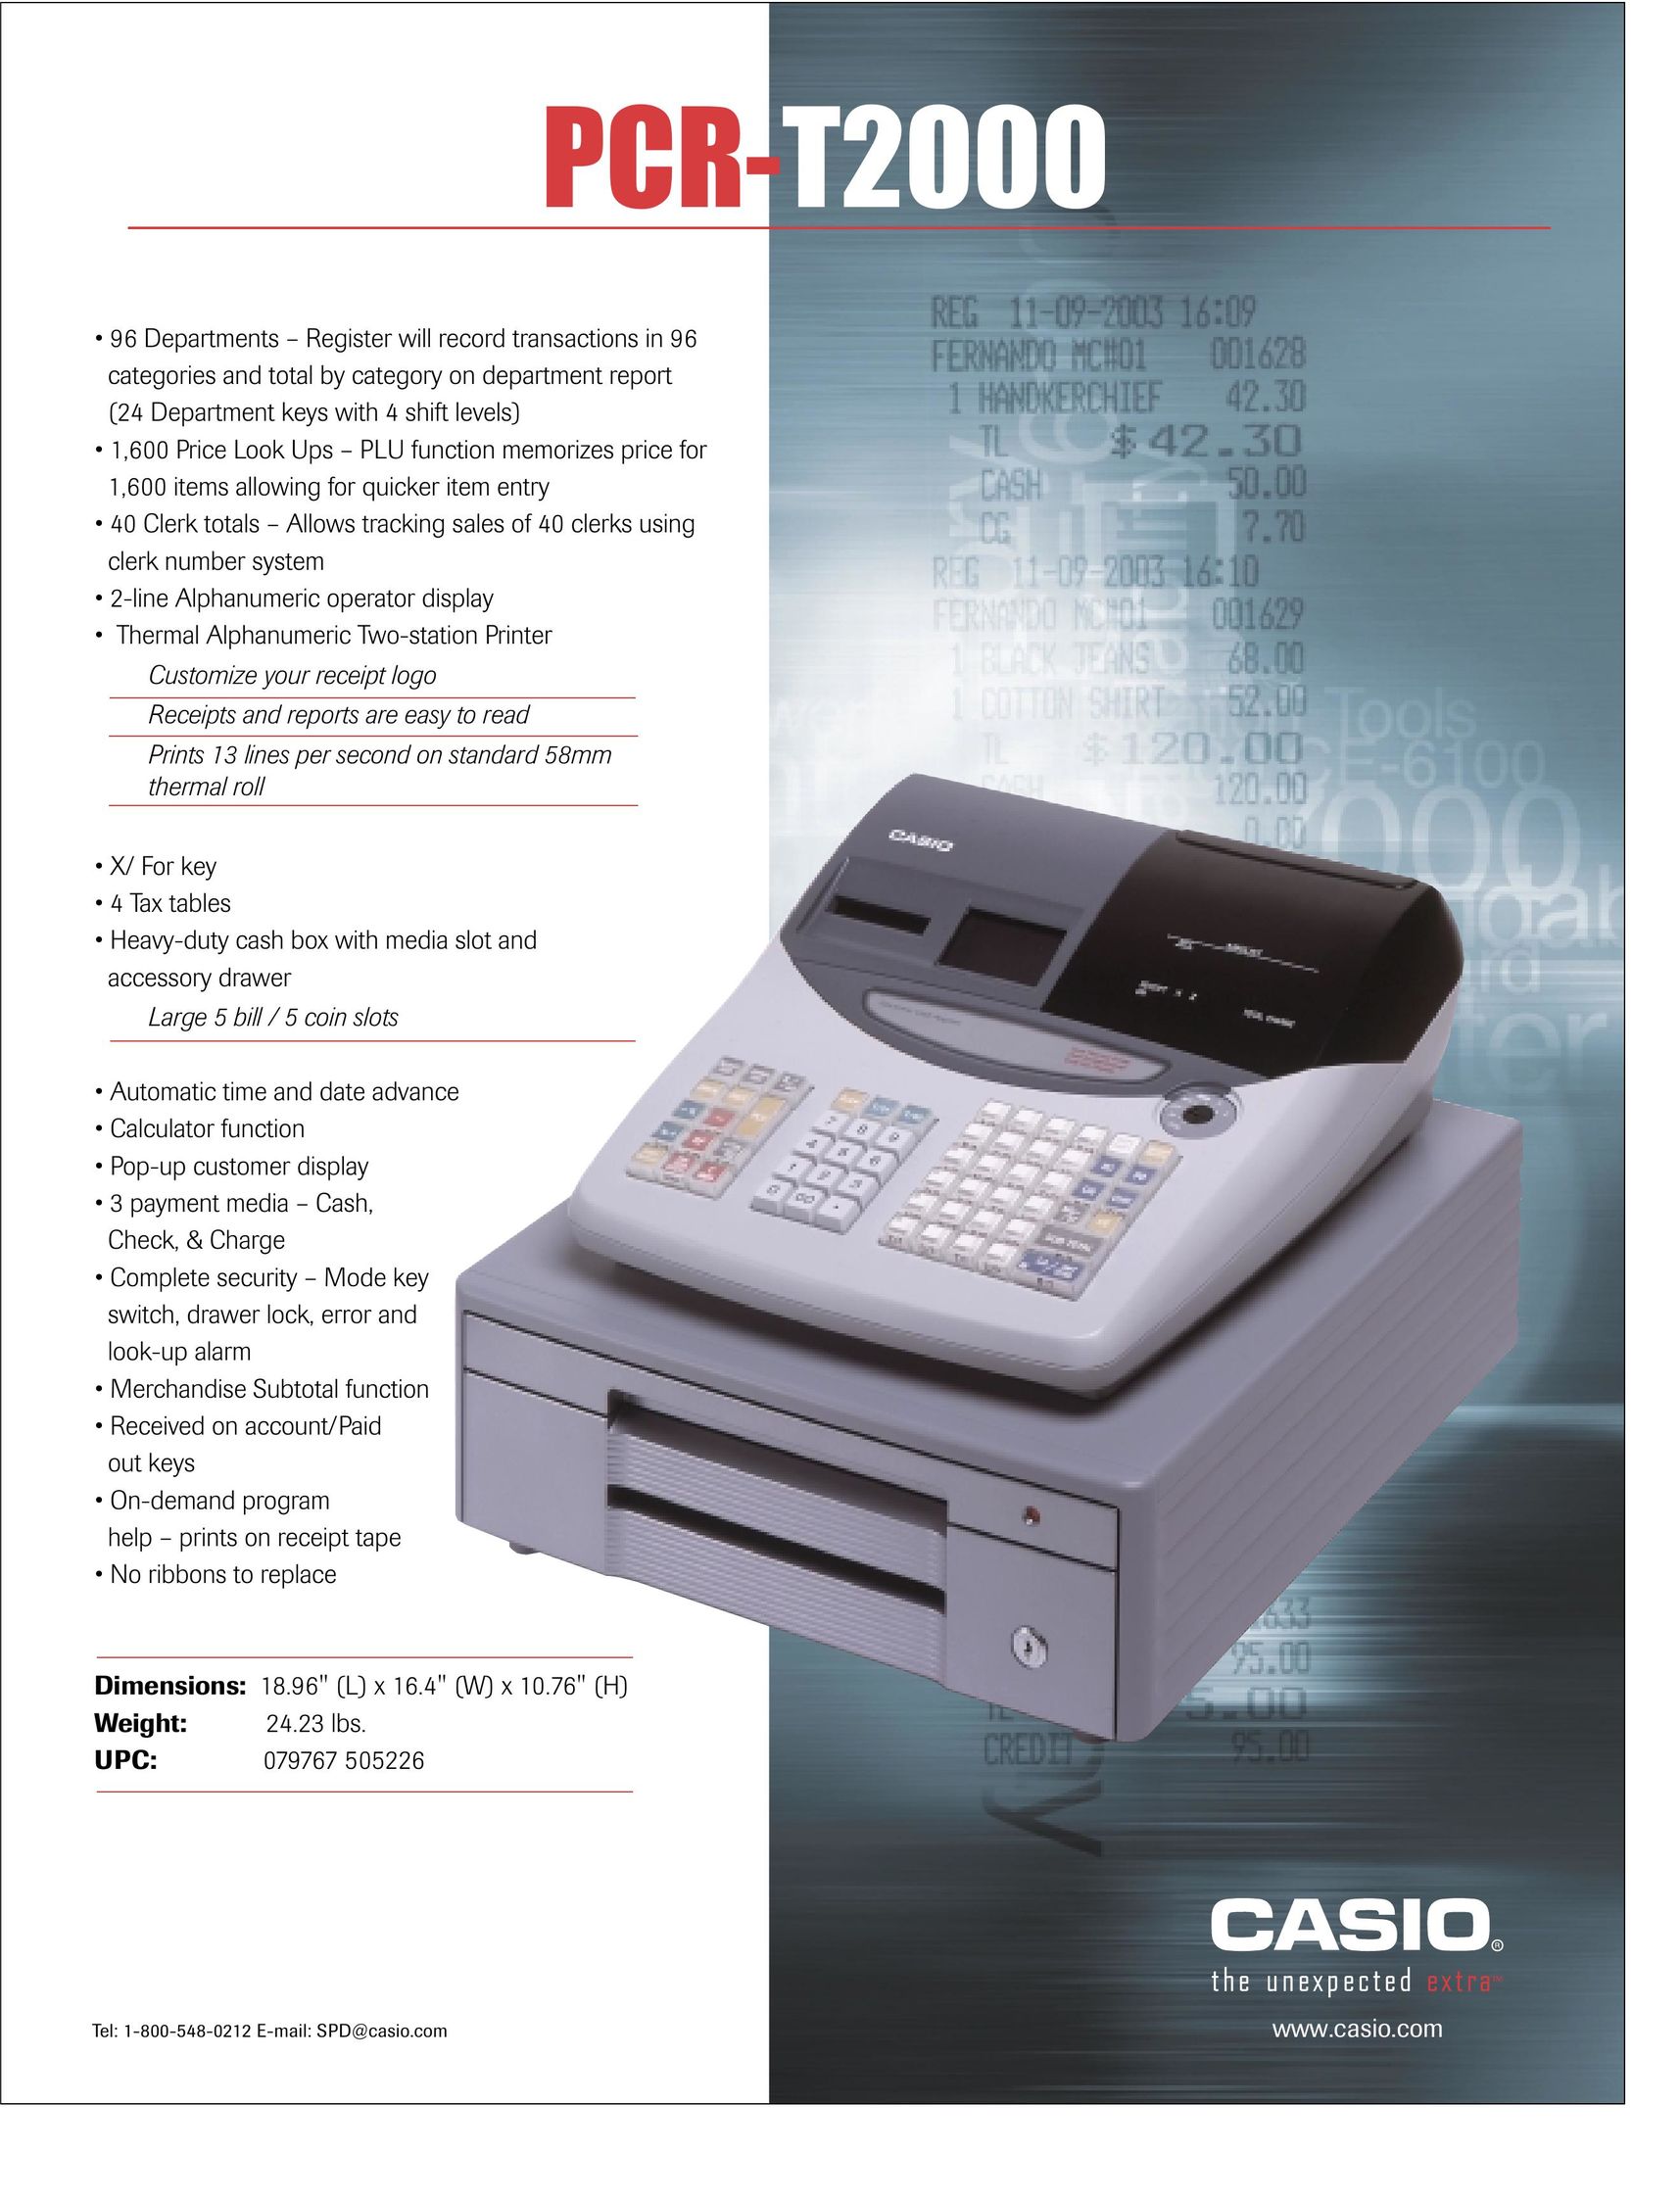 Casio PCR-T2000 Cash Register User Manual